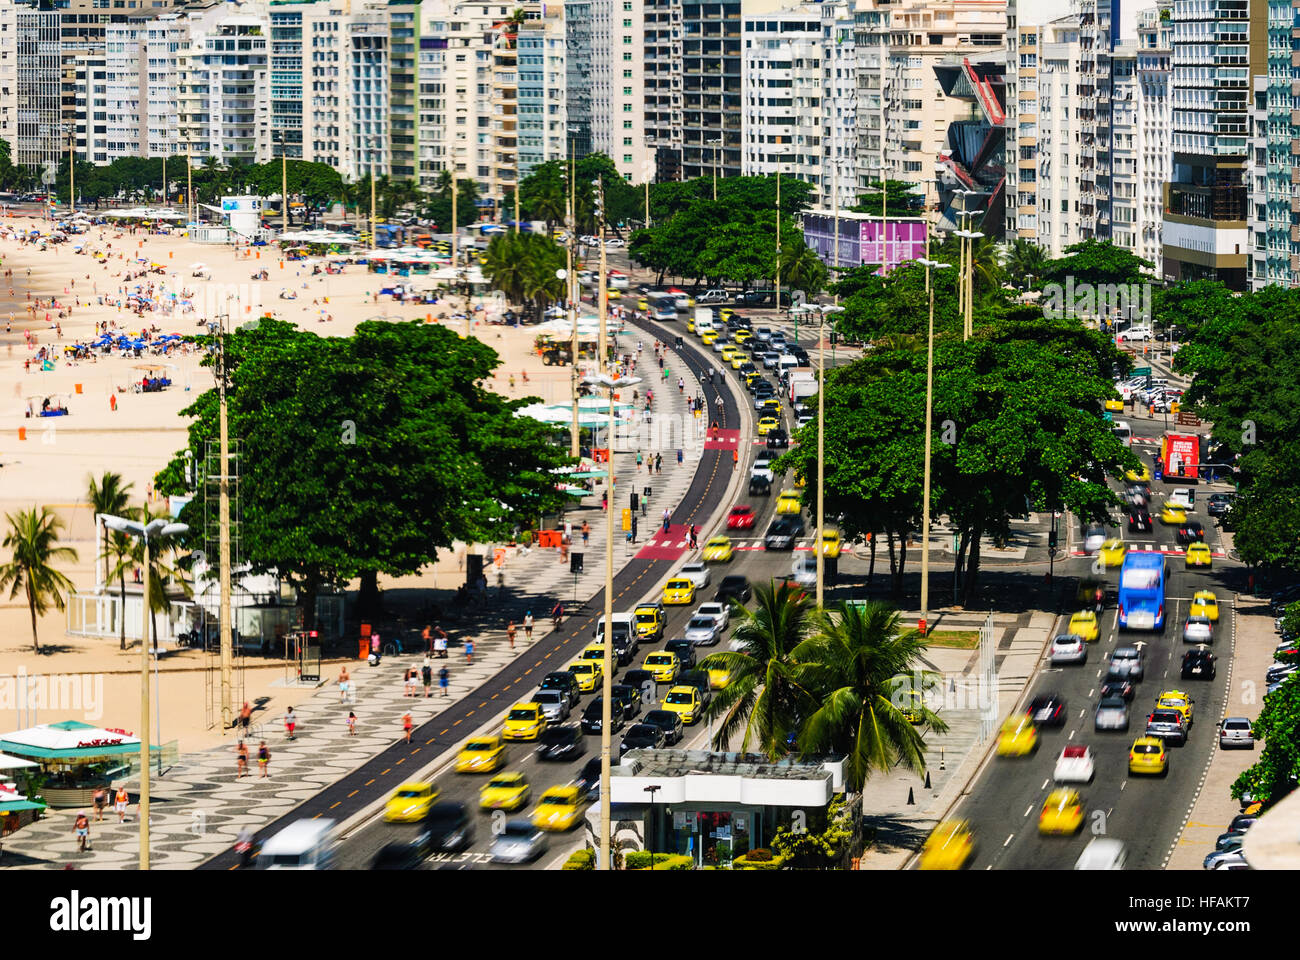 Copacabana, Rio de Janeiro, Brazil Stock Photo